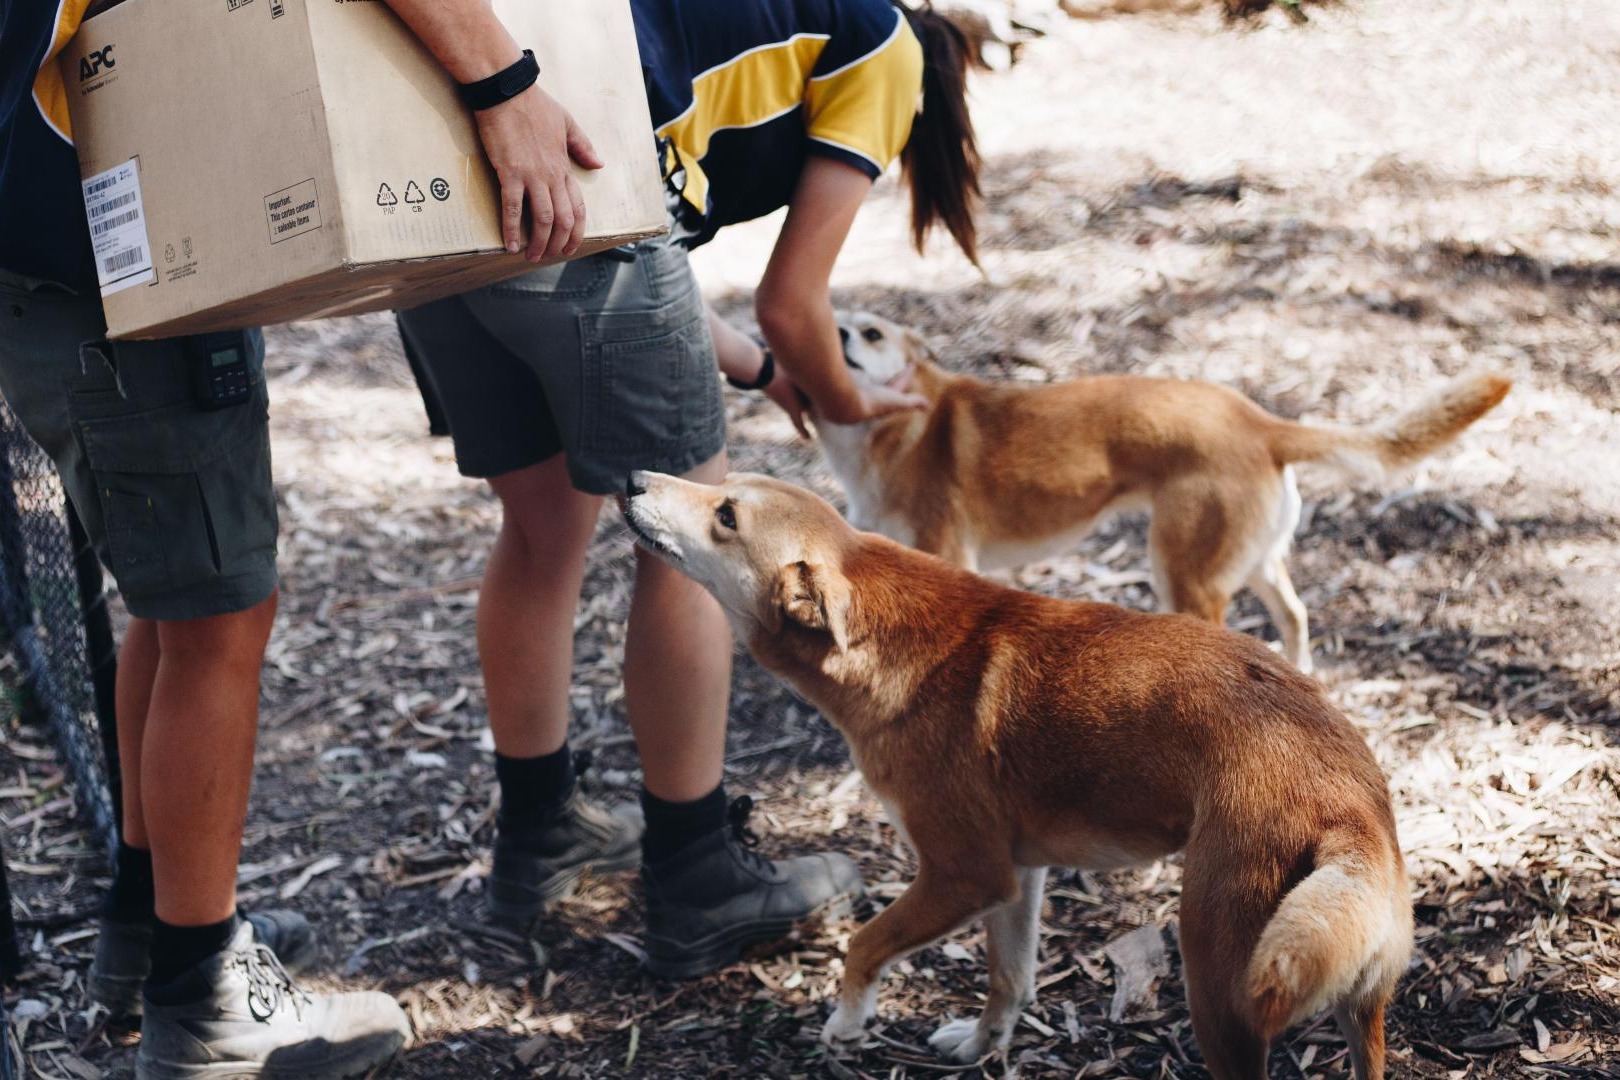 澳洲男子好心餵「流浪狗」餅乾 竟犯禁餵中澳洲野犬被罰18000元